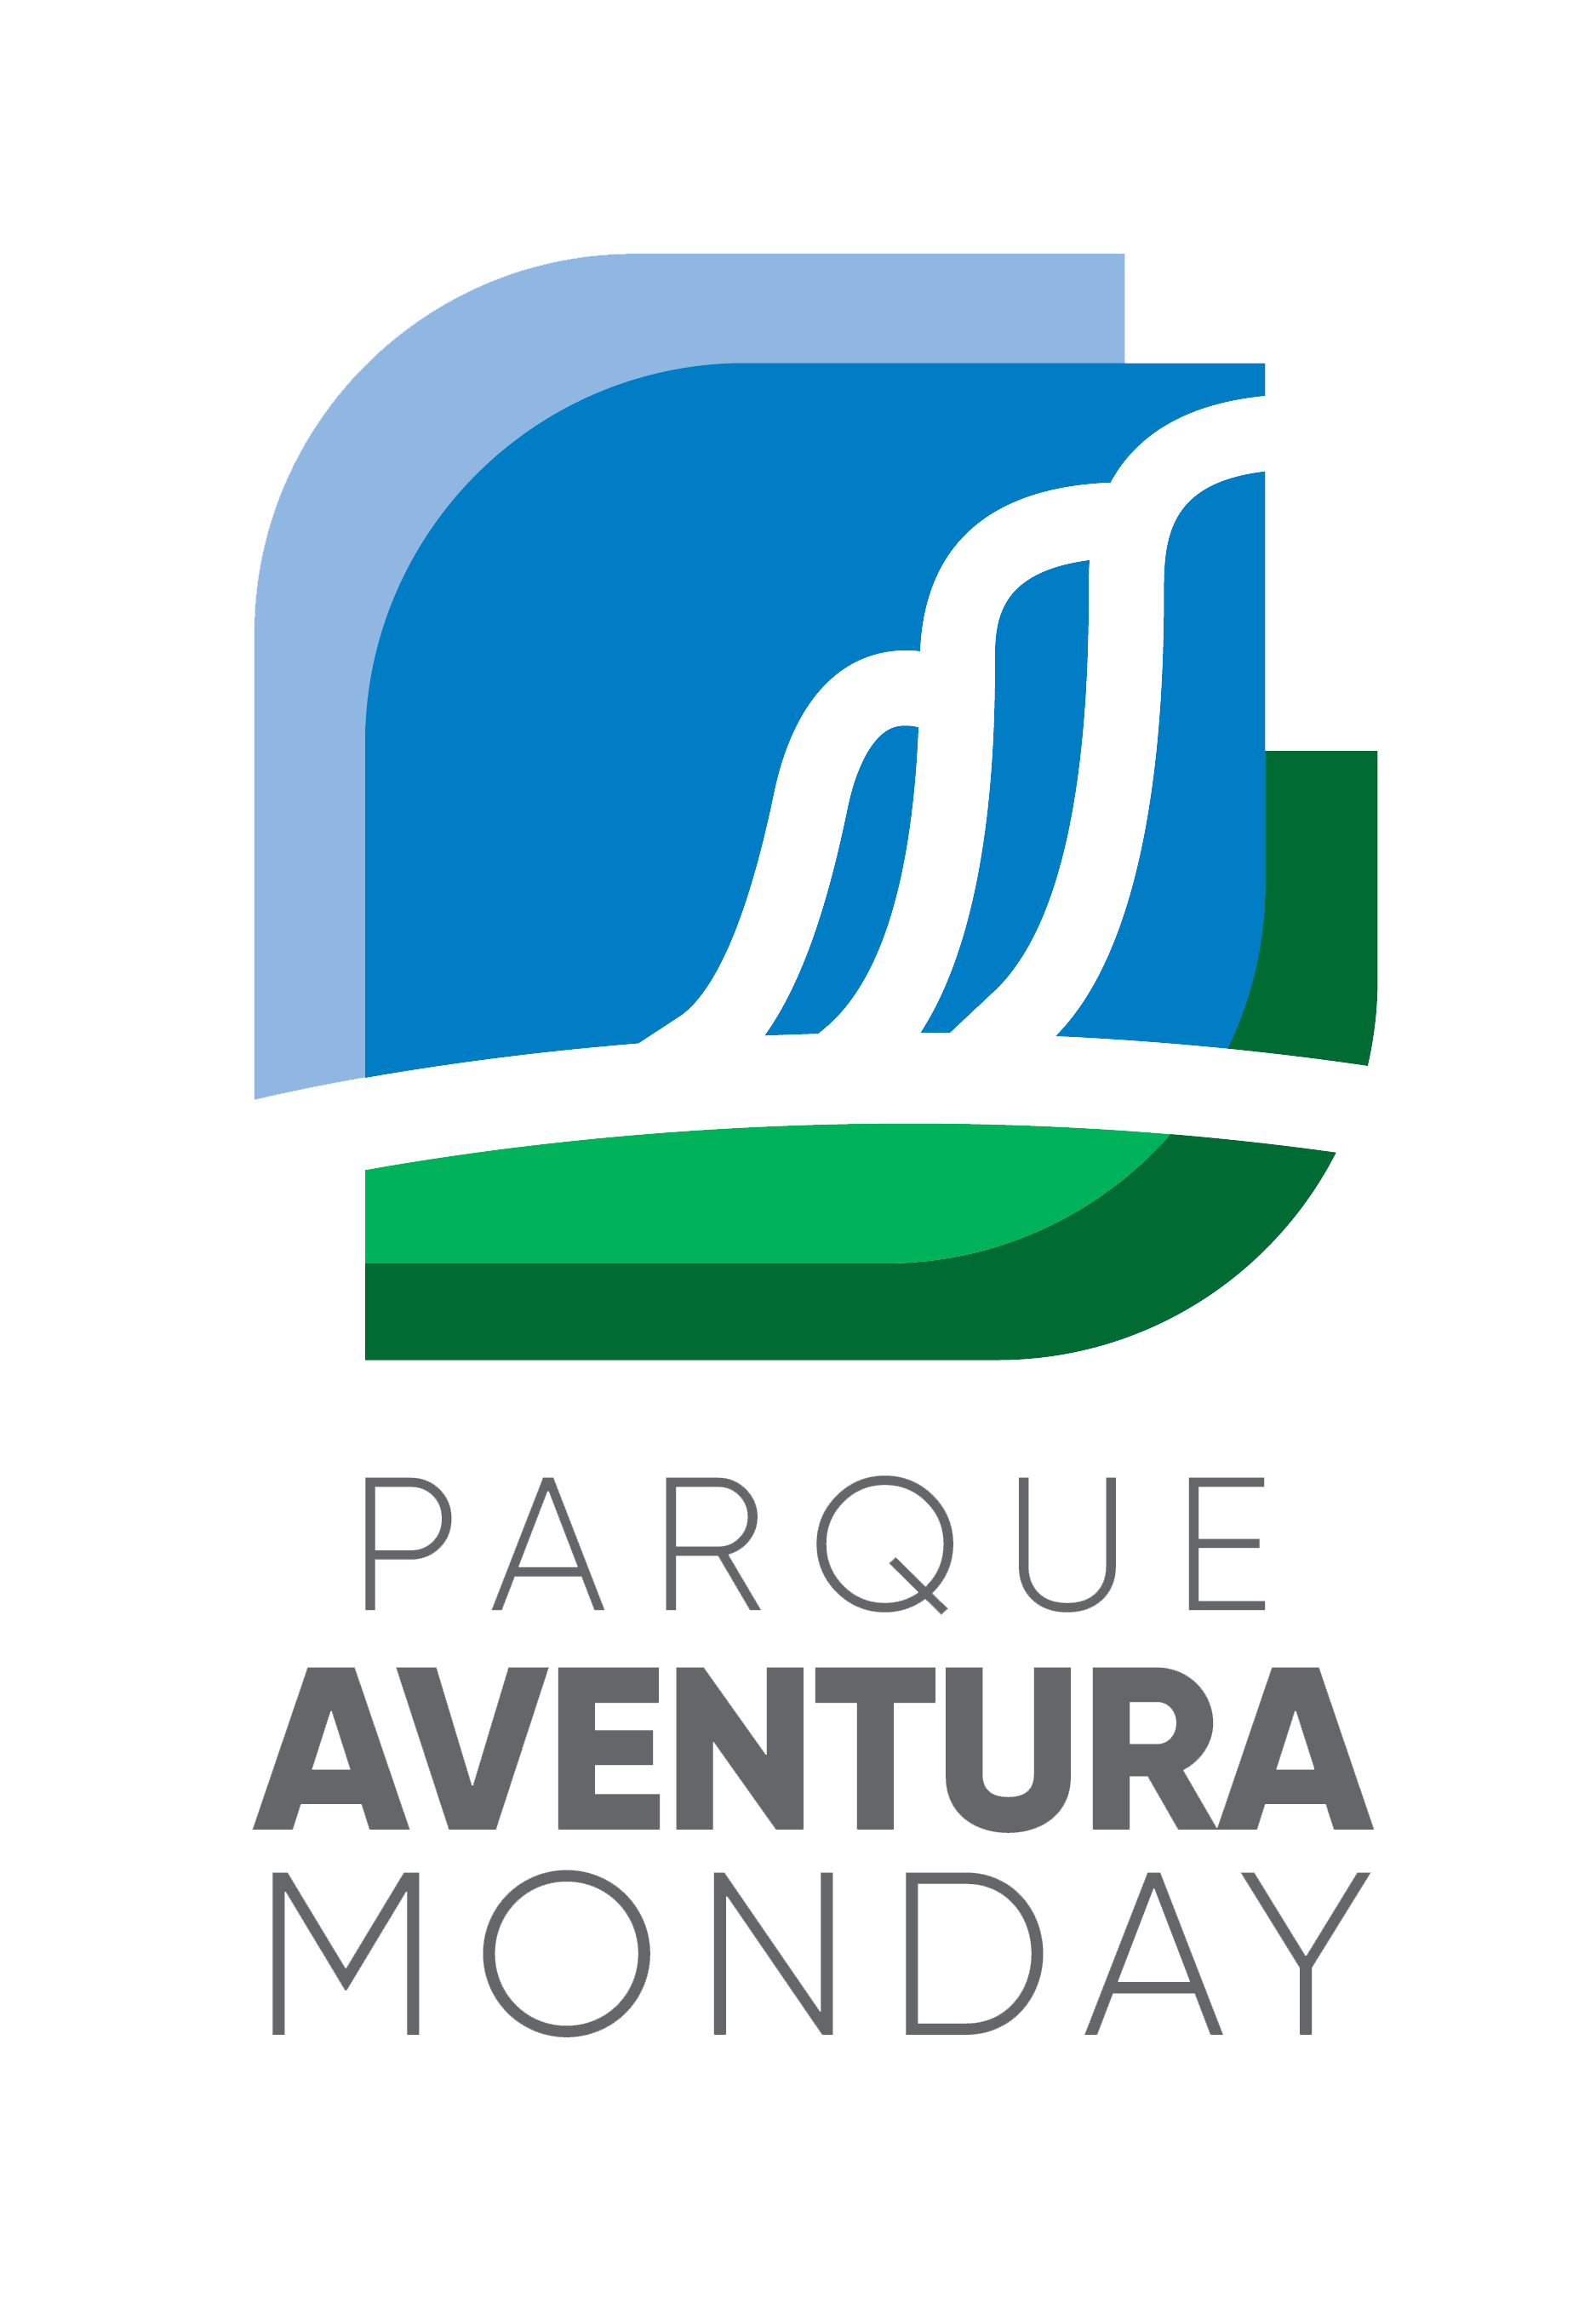 Parque Aventura Monday